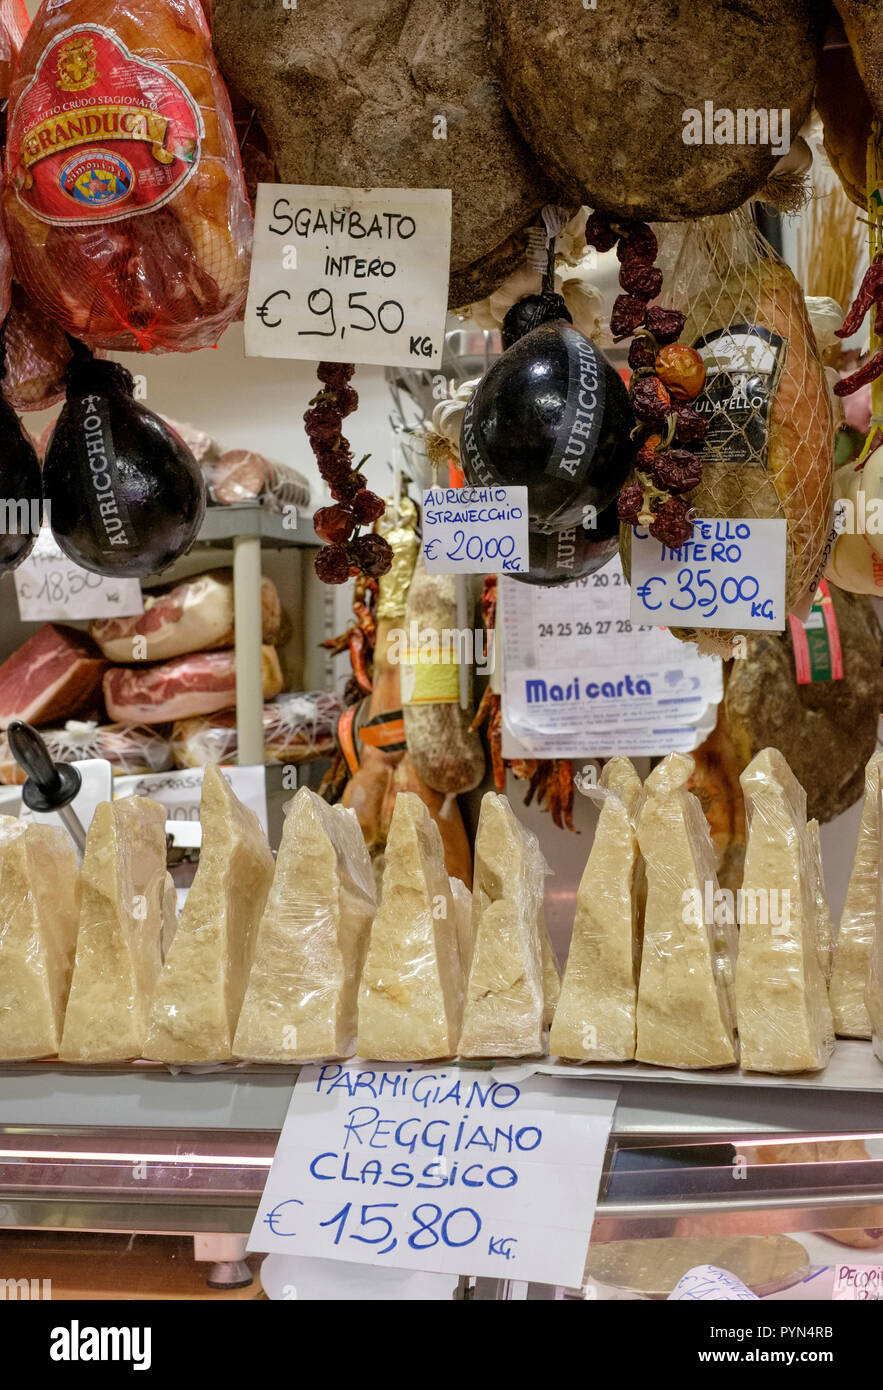 Display del Prosciutto Sgamabto prosciutto e formaggio parmigiano reggiano classico su un mercato in stallo a Firenze, Italia. Foto Stock